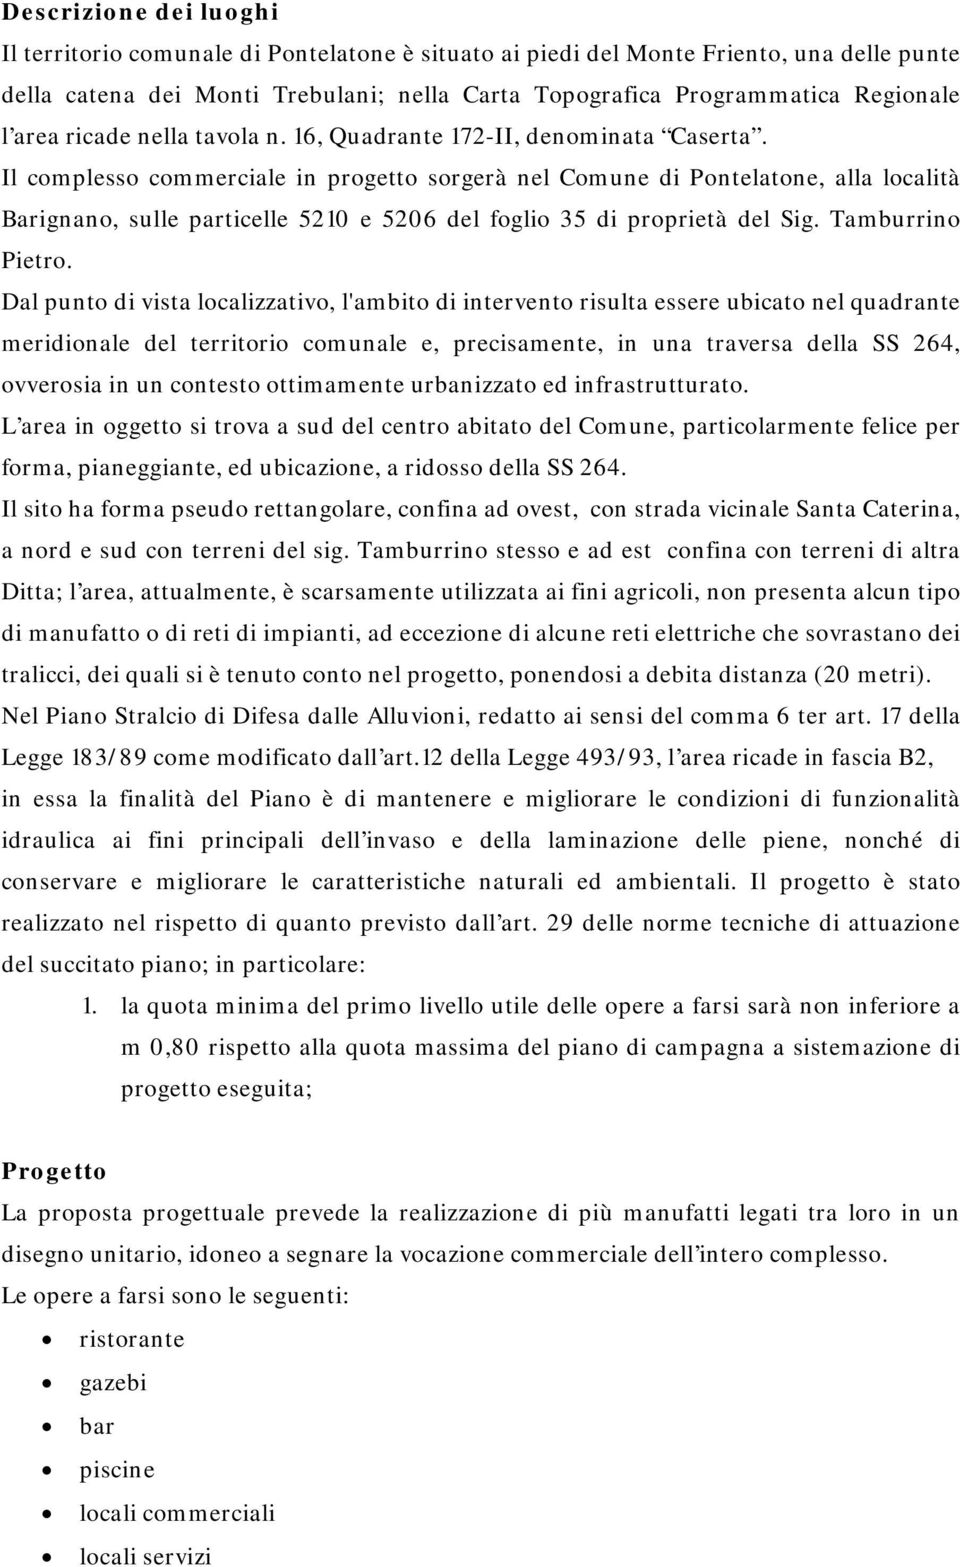 Il complesso commerciale in progetto sorgerà nel Comune di Pontelatone, alla località Barignano, sulle particelle 5210 e 5206 del foglio 35 di proprietà del Sig. Tamburrino Pietro.